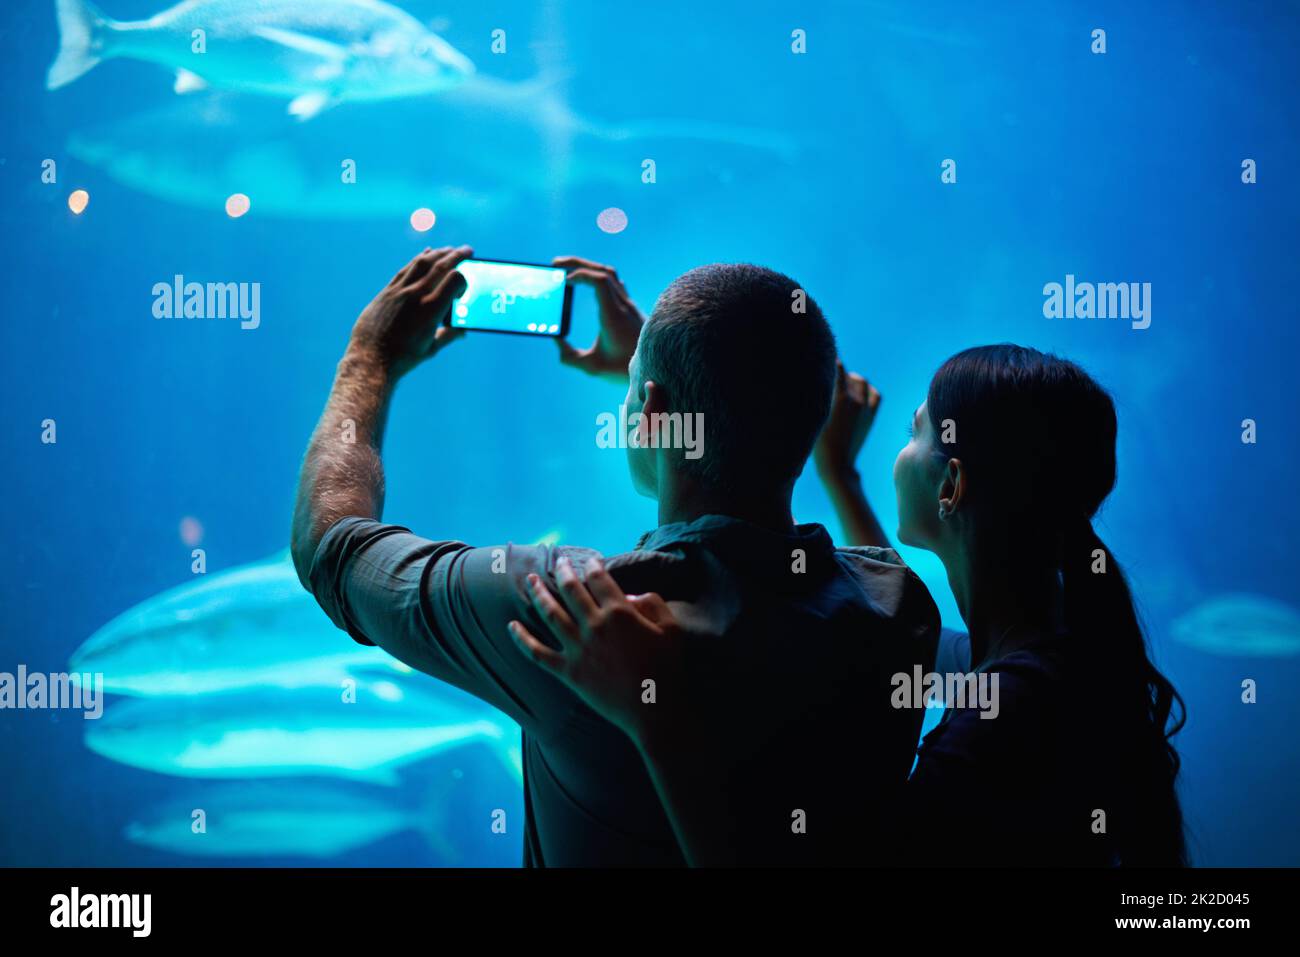 Capturez la beauté. Photo d'un couple prenant une photo du poisson dans un aquarium. Banque D'Images